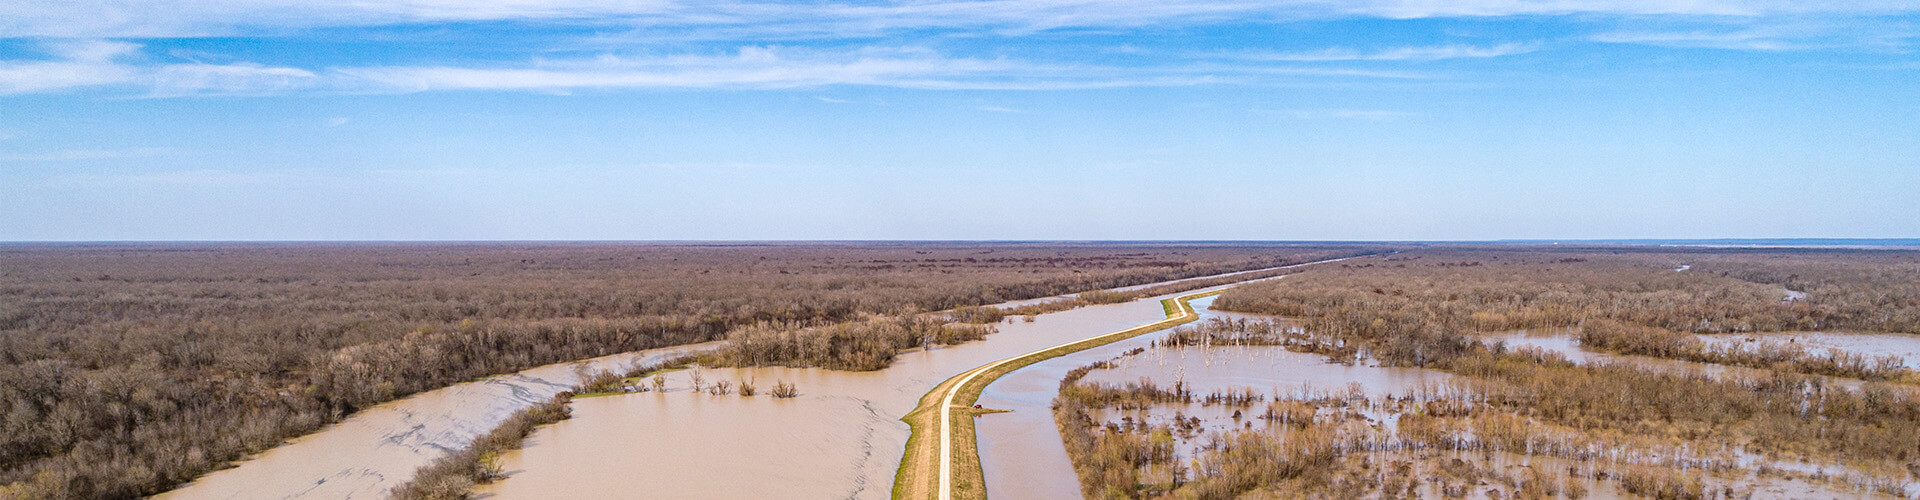 flooding across fields